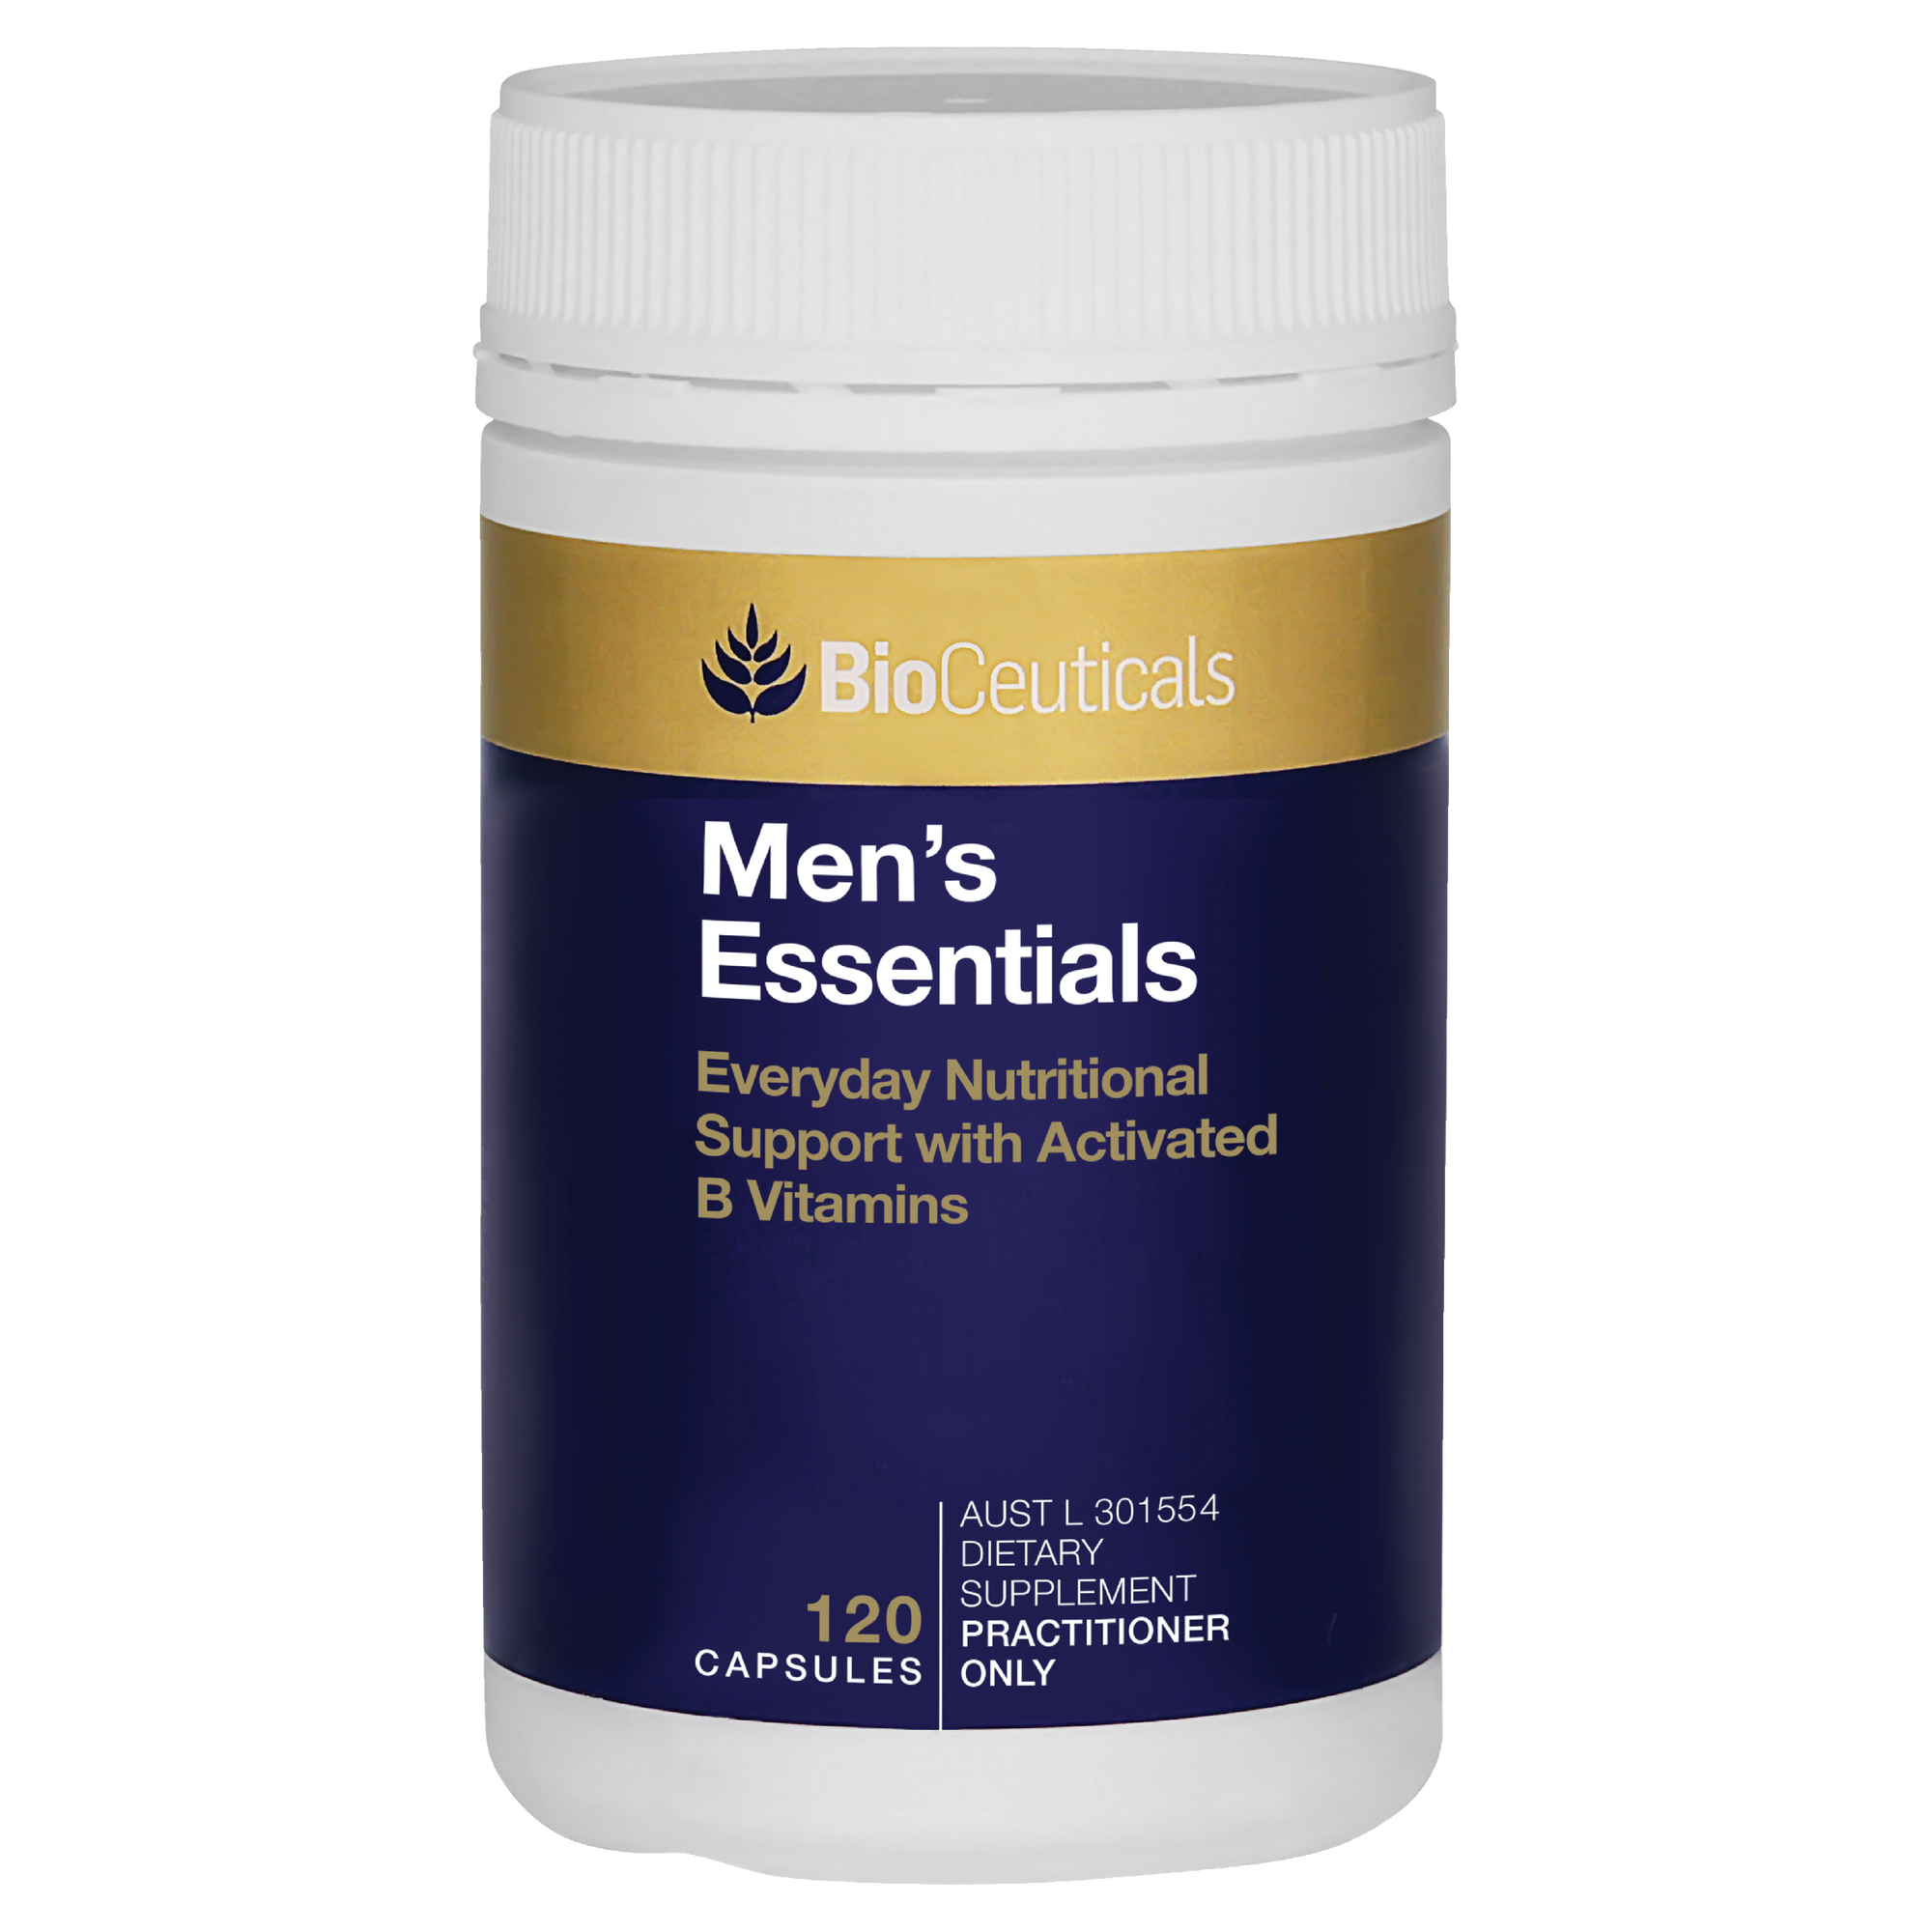 BioCeuticals Men’s Essentials